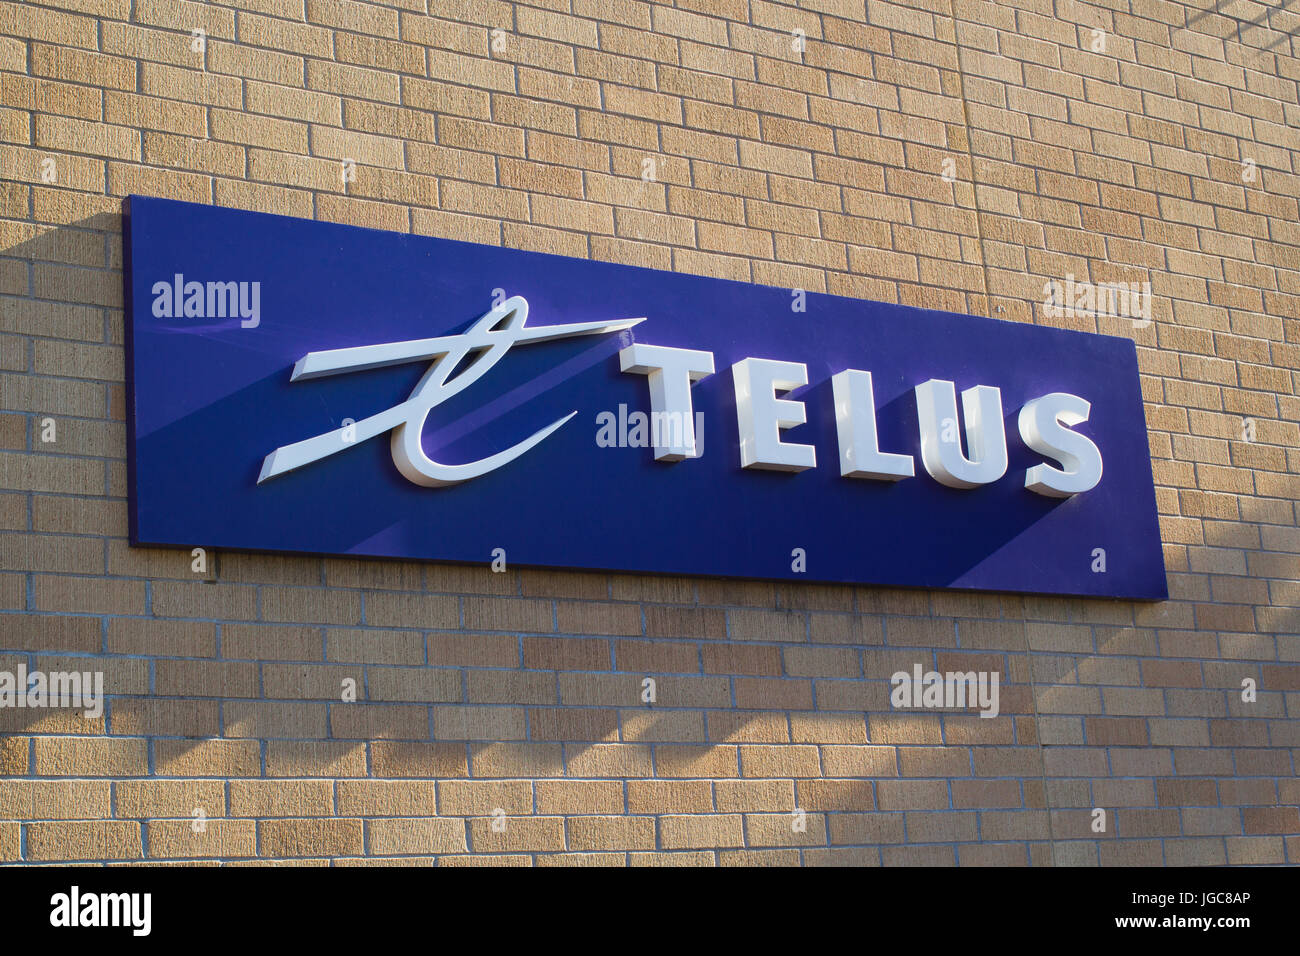 TRURO, Kanada - 5. Juli 2017: Telus Zeichen. Telus Communications ist ein kanadisches Unternehmen bietet eine Vielzahl von Telekommunikations-Dienstleistungen und Produkte. Stockfoto